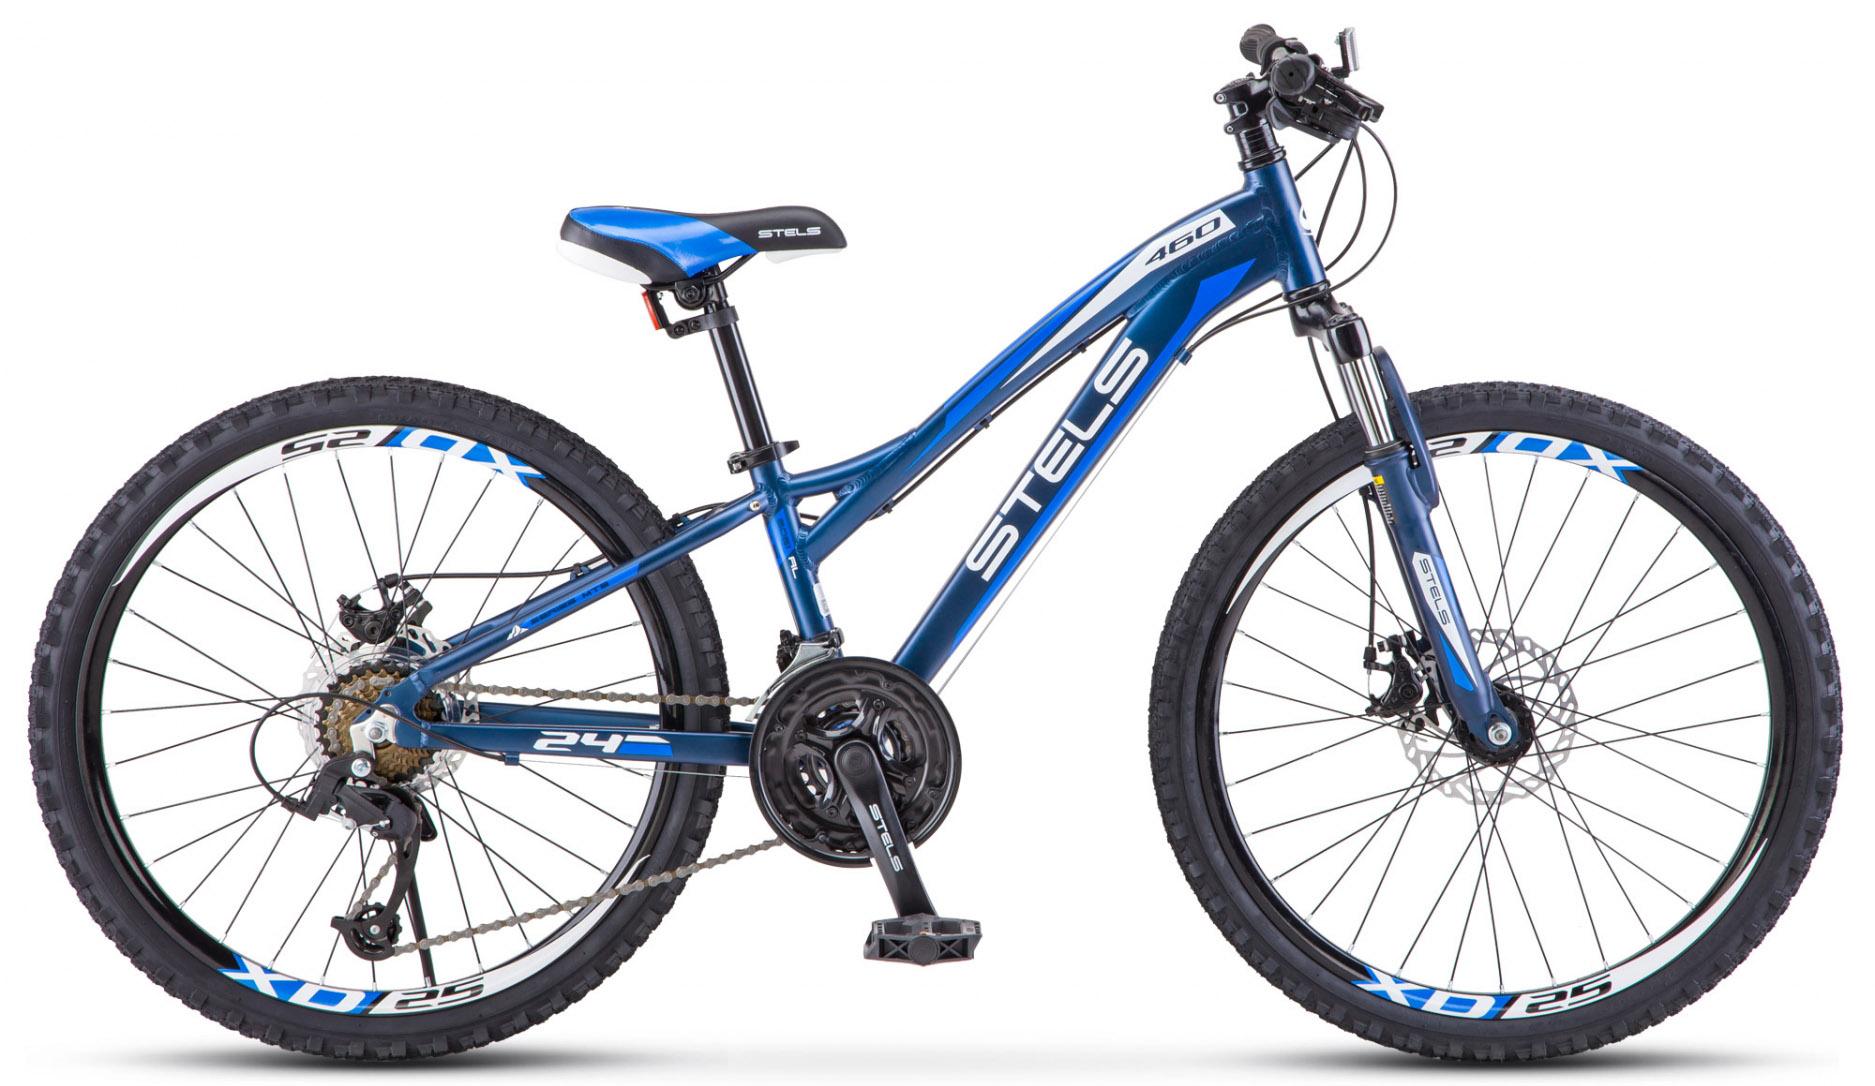  Отзывы о Подростковом велосипеде Stels Navigator 460 MD K010 2020